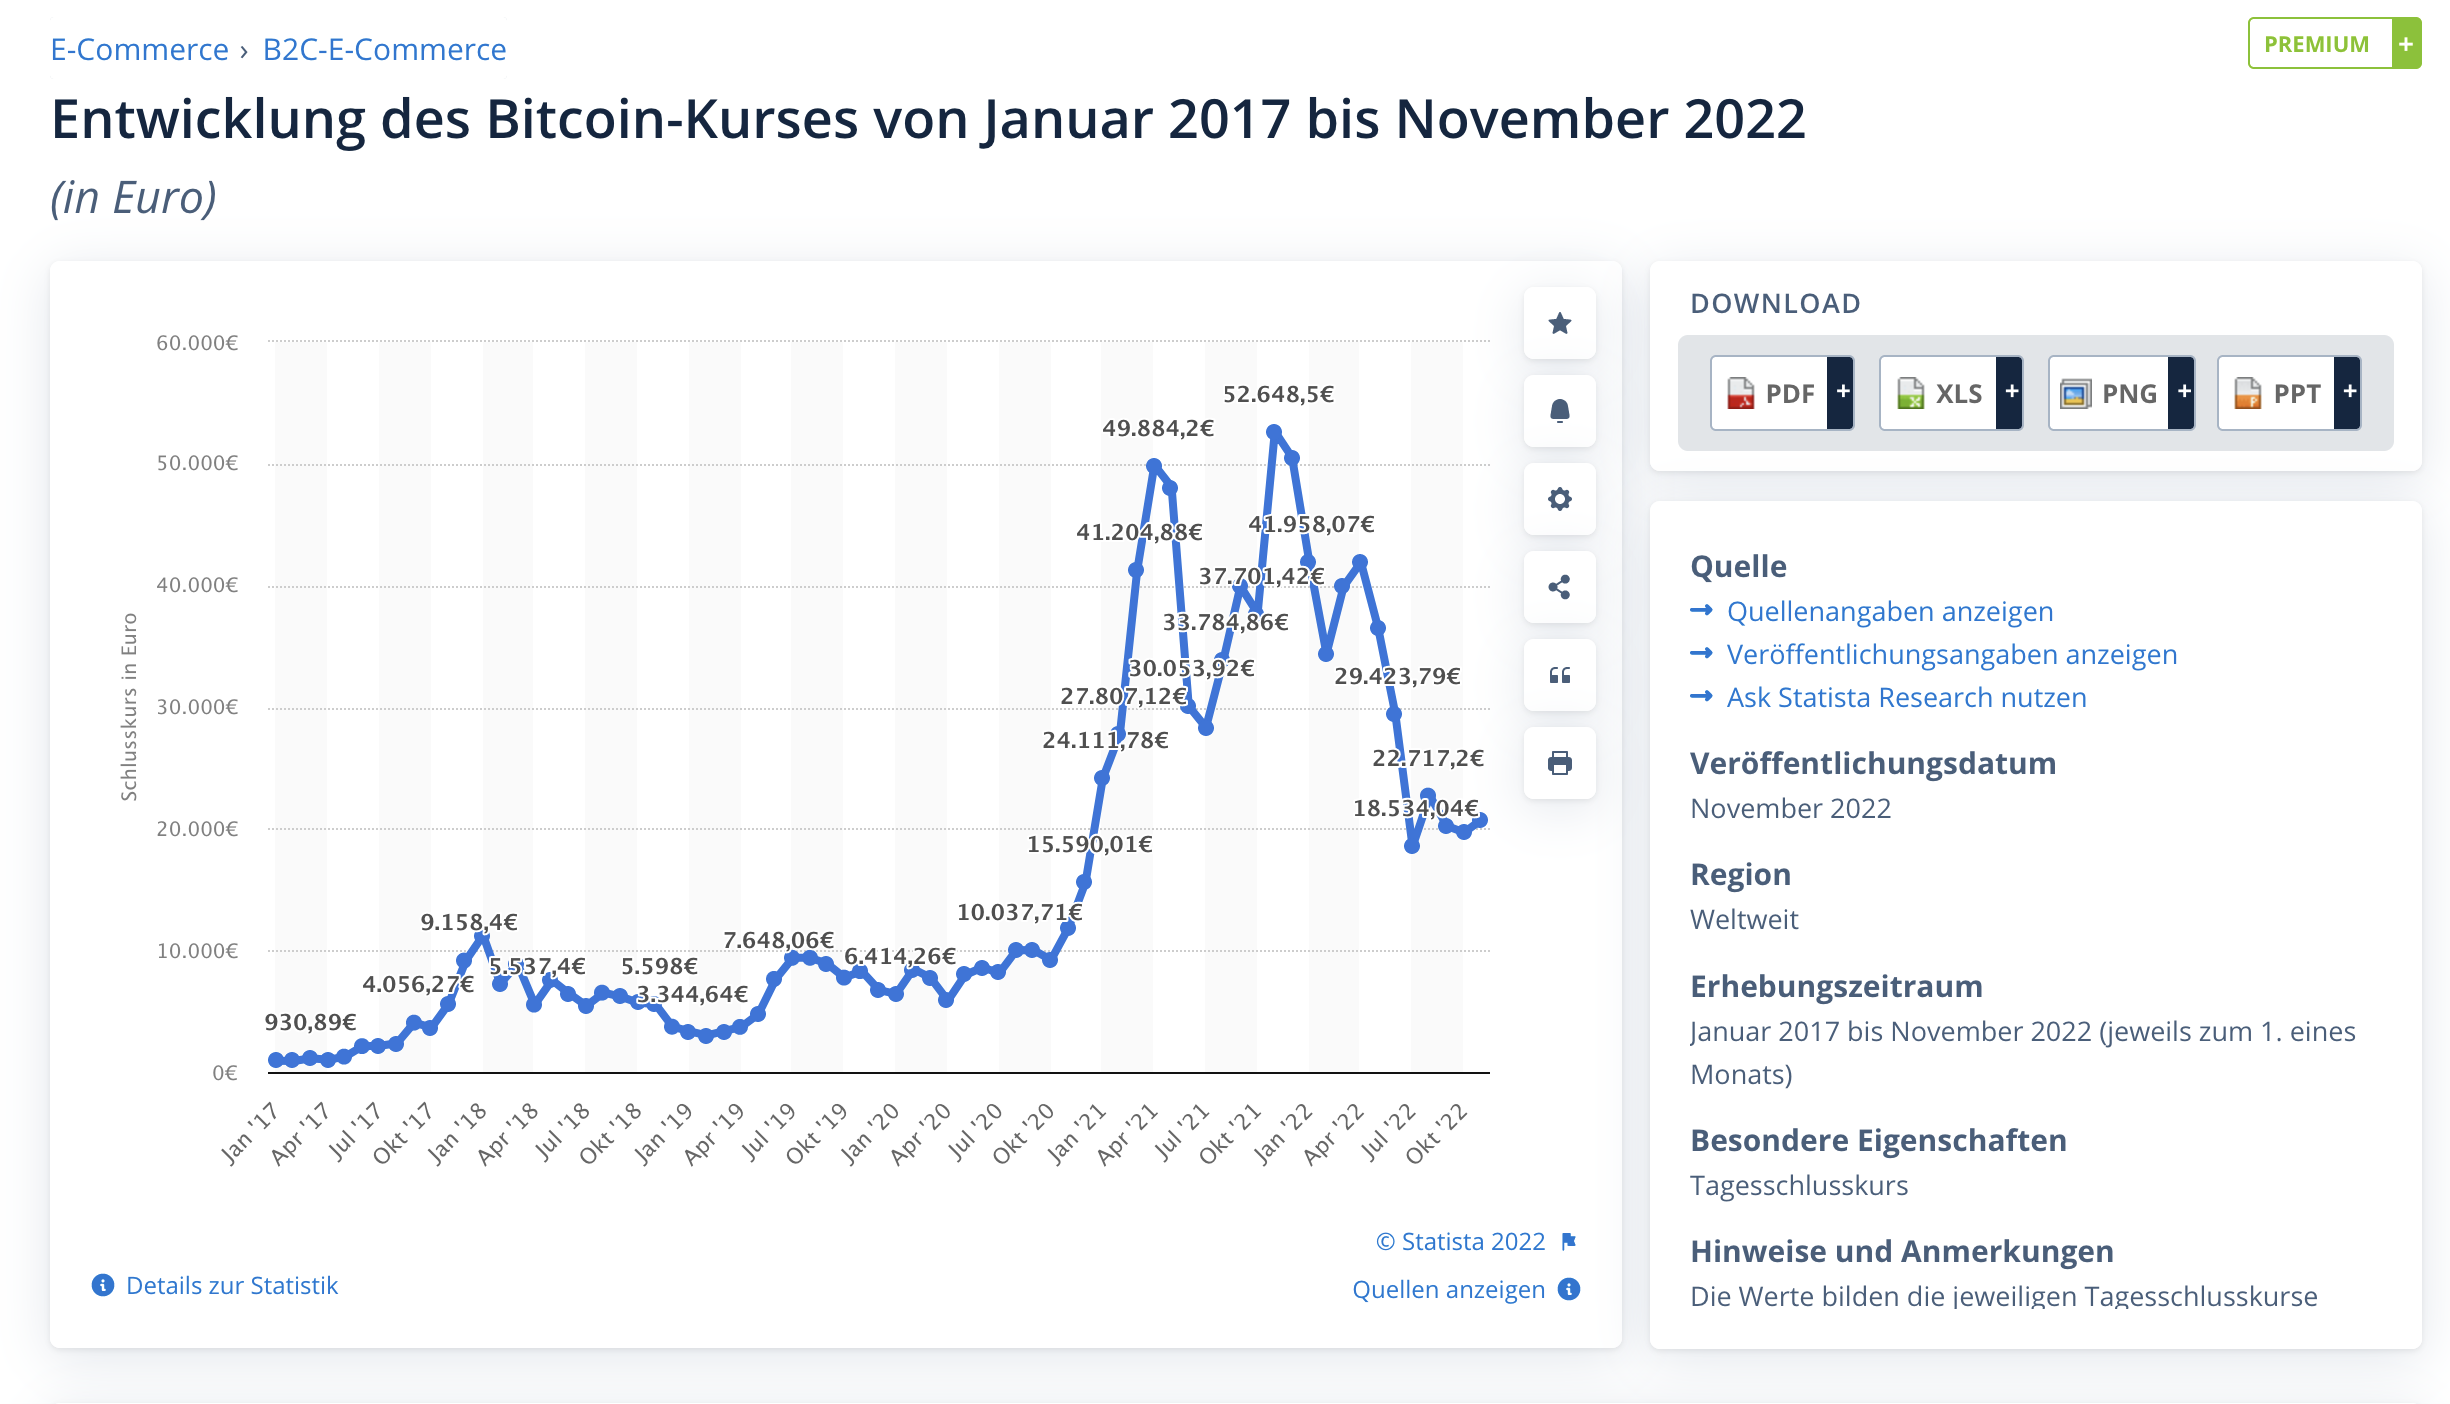 screenshot-chart-der-bitcoin-kurs-anzeigt